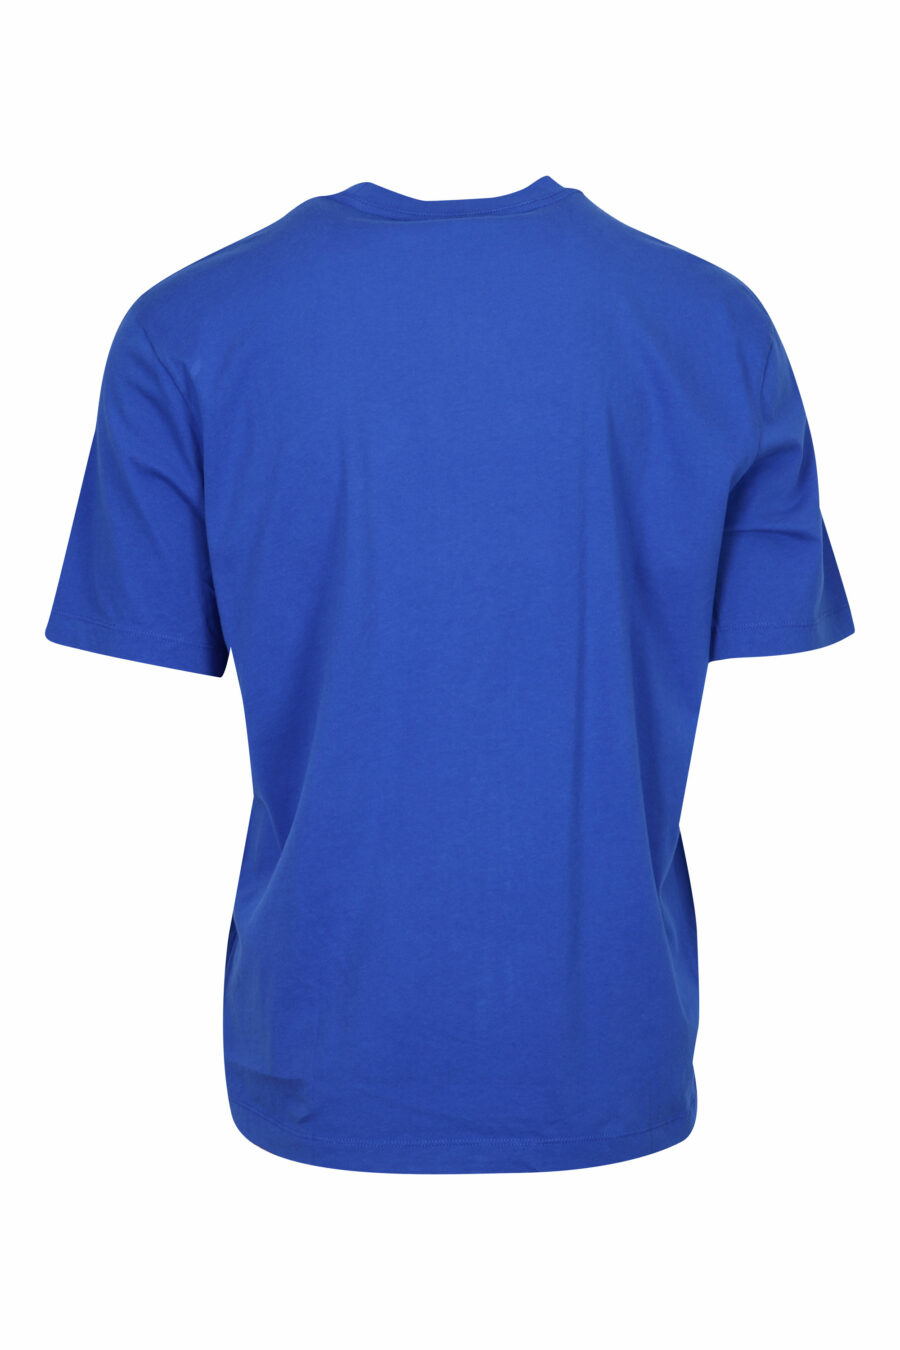 Camiseta azul con maxilogo escudo desgastado - 8058610830472 1